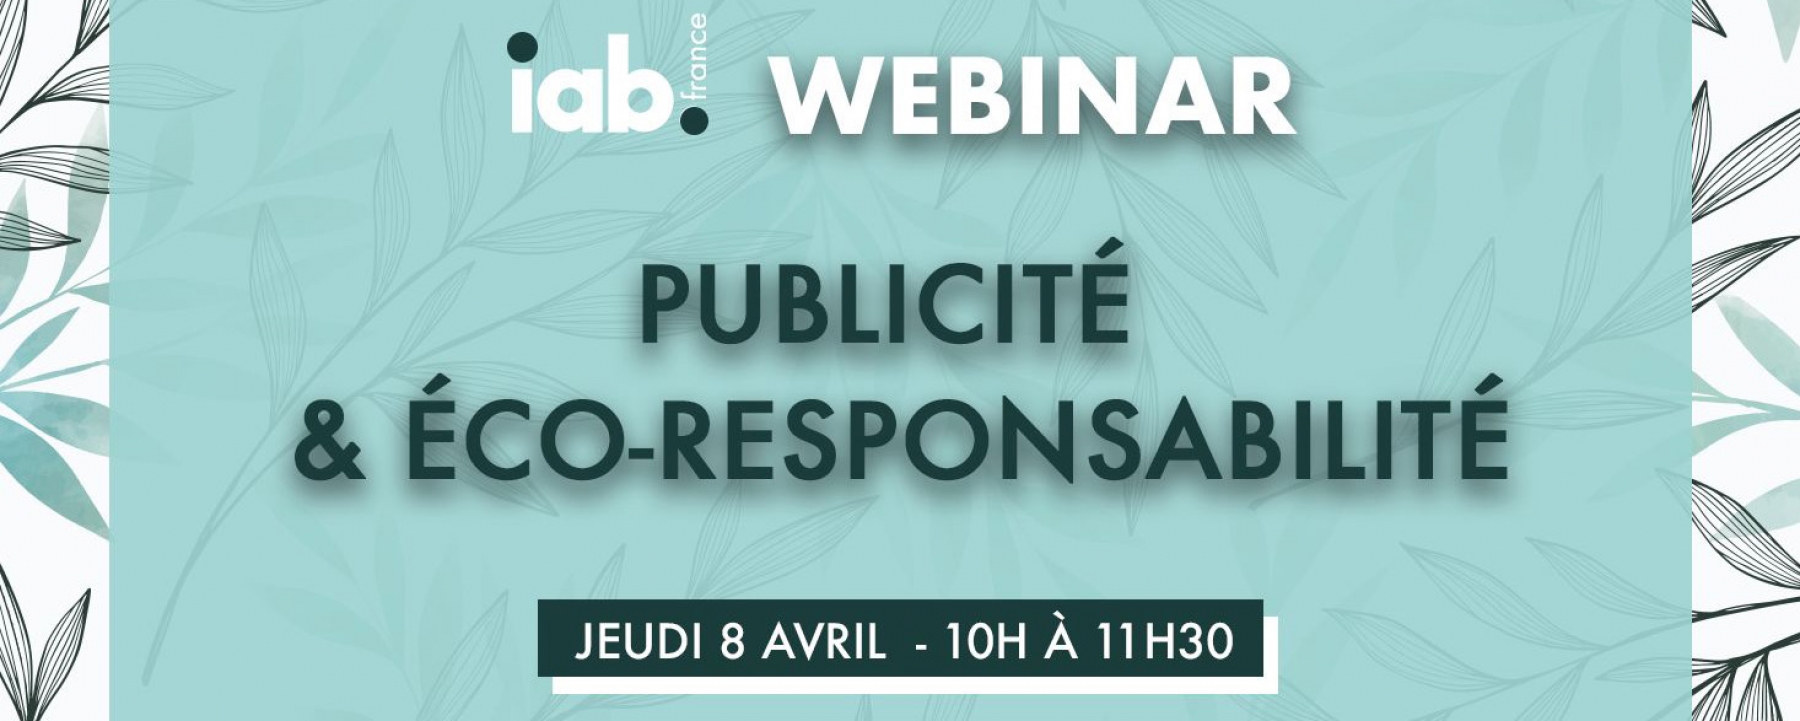 Publicité & éco-responsabilité, organisé par l'IAB France le 8 avril 2021